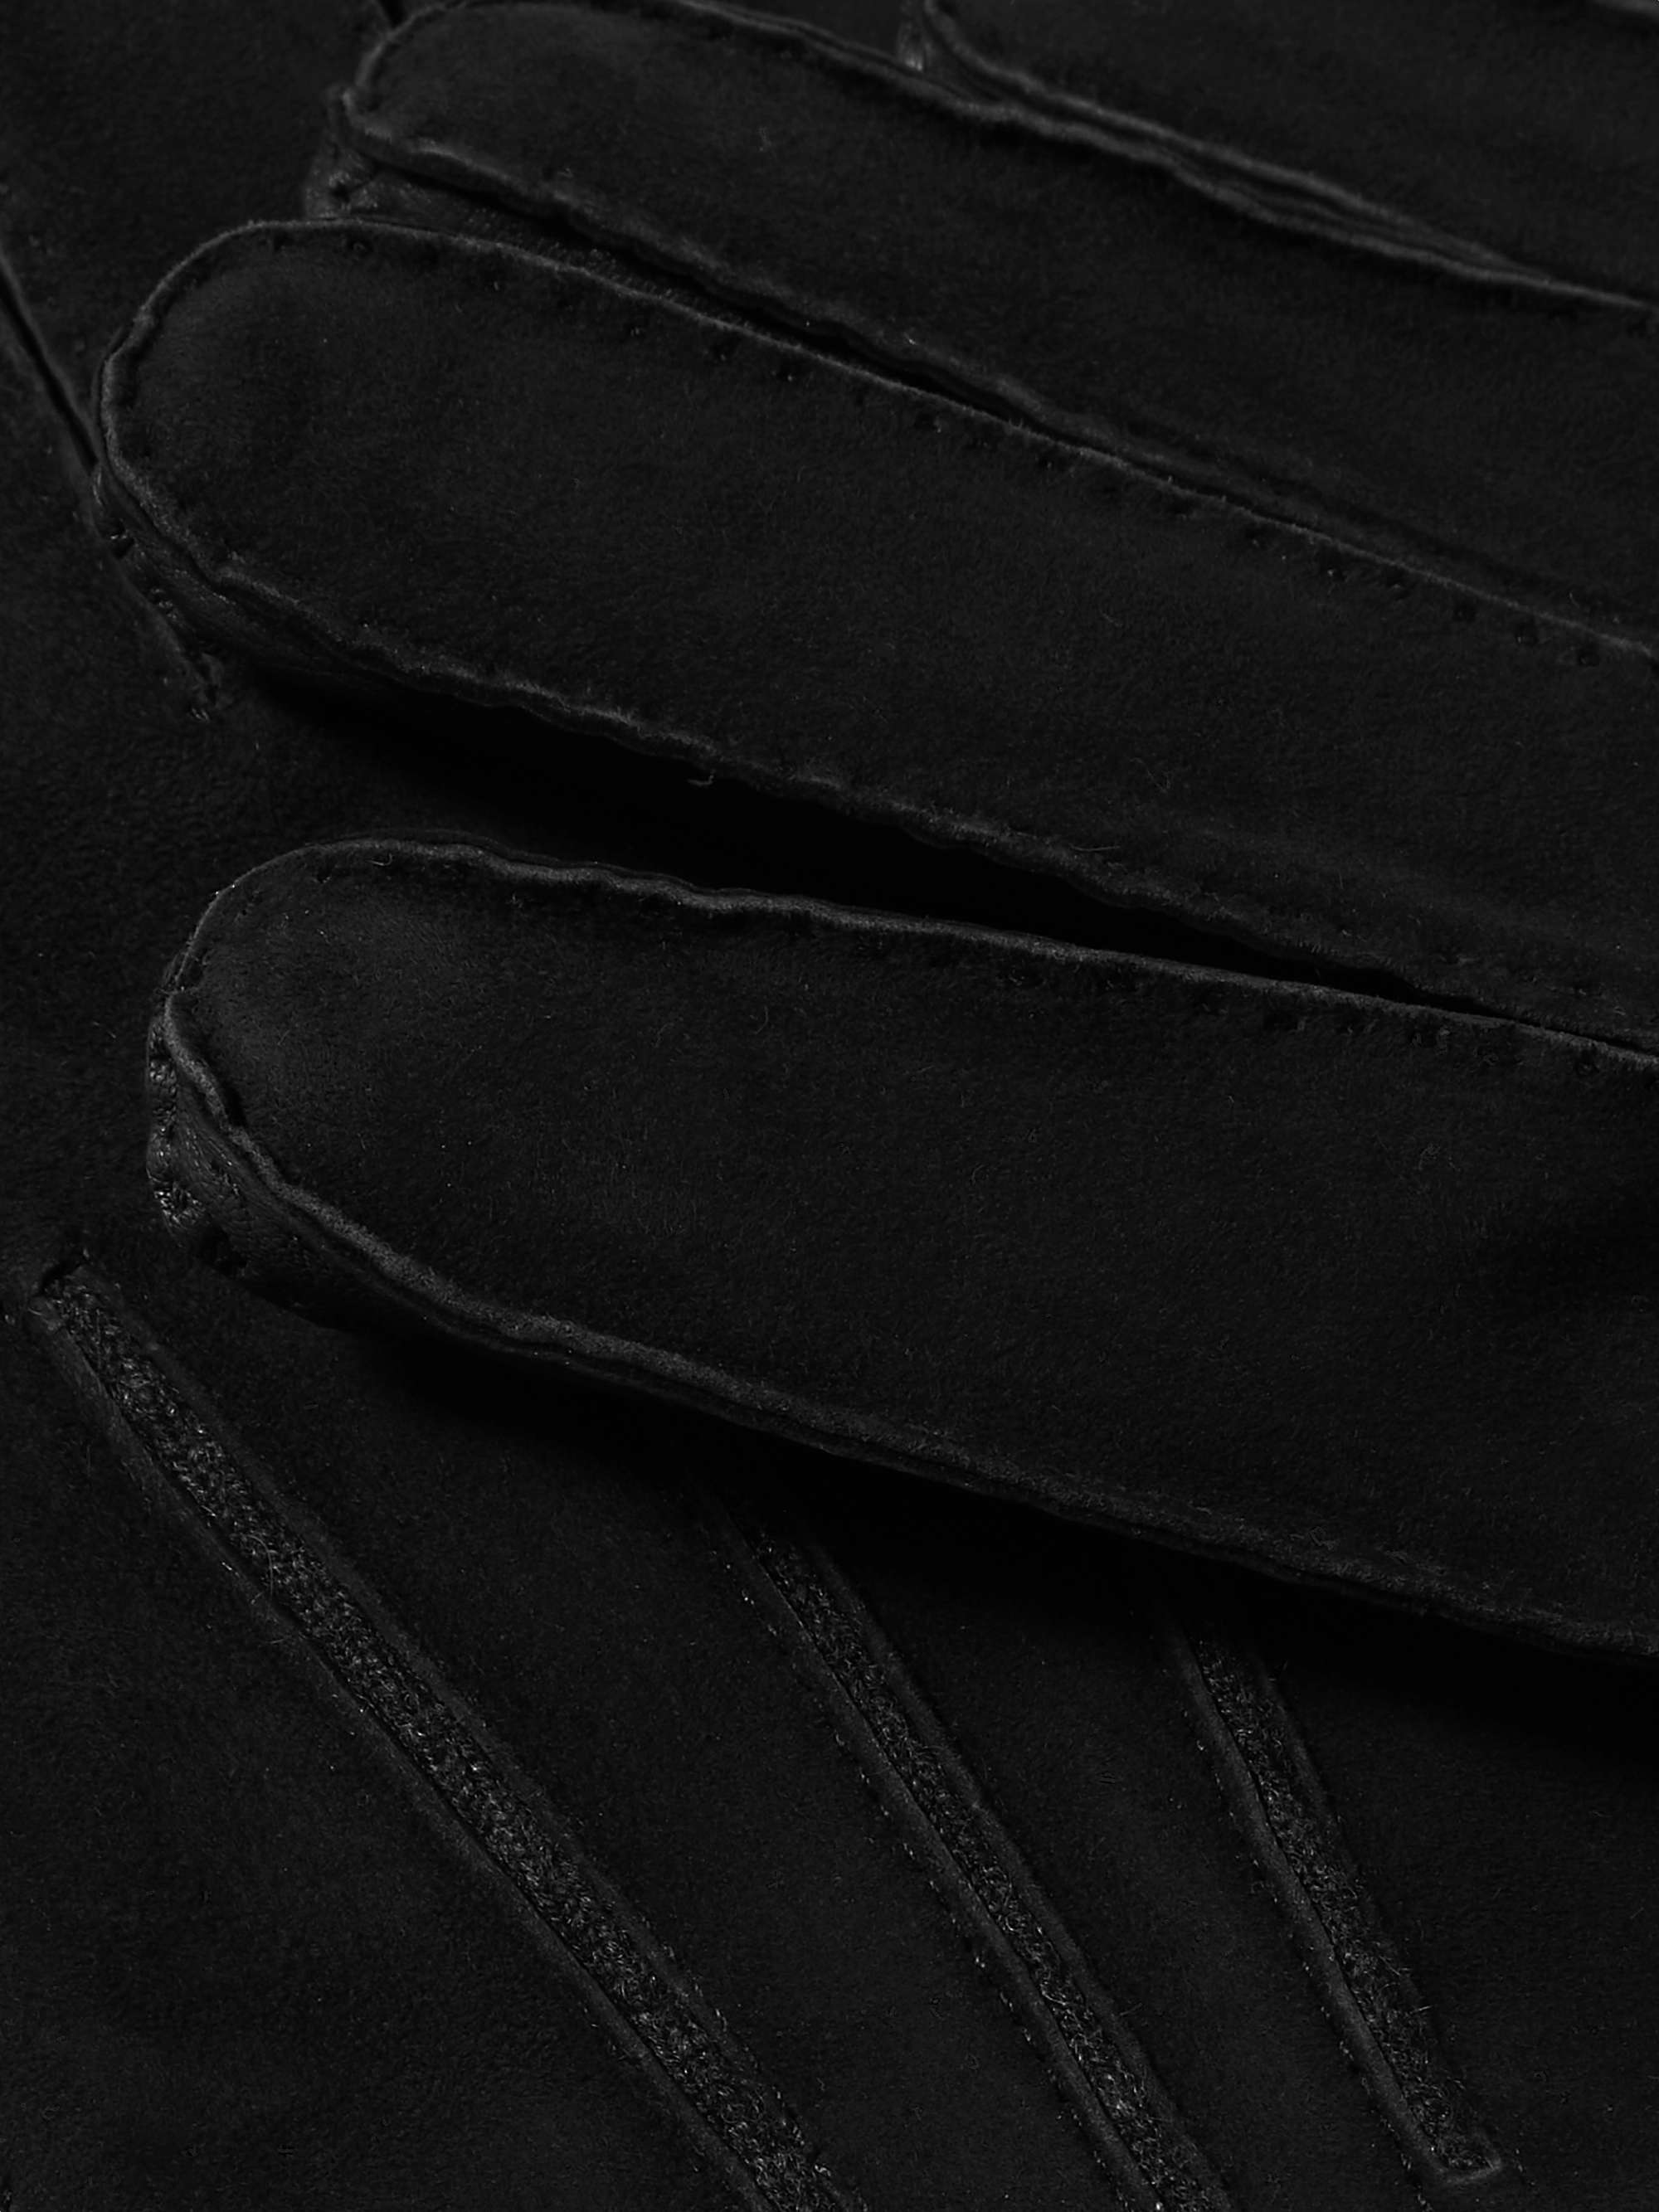 Black Leather Gloves | BOTTEGA VENETA | MR PORTER